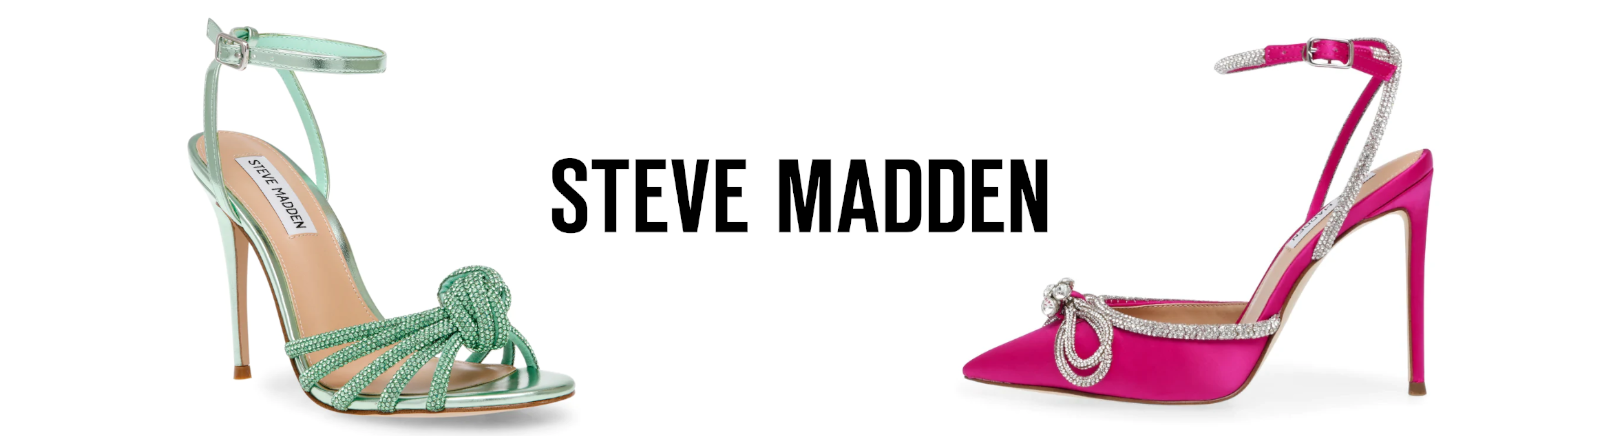 Juppen: Steve Madden Pumps Schuhe online kaufen online shoppen